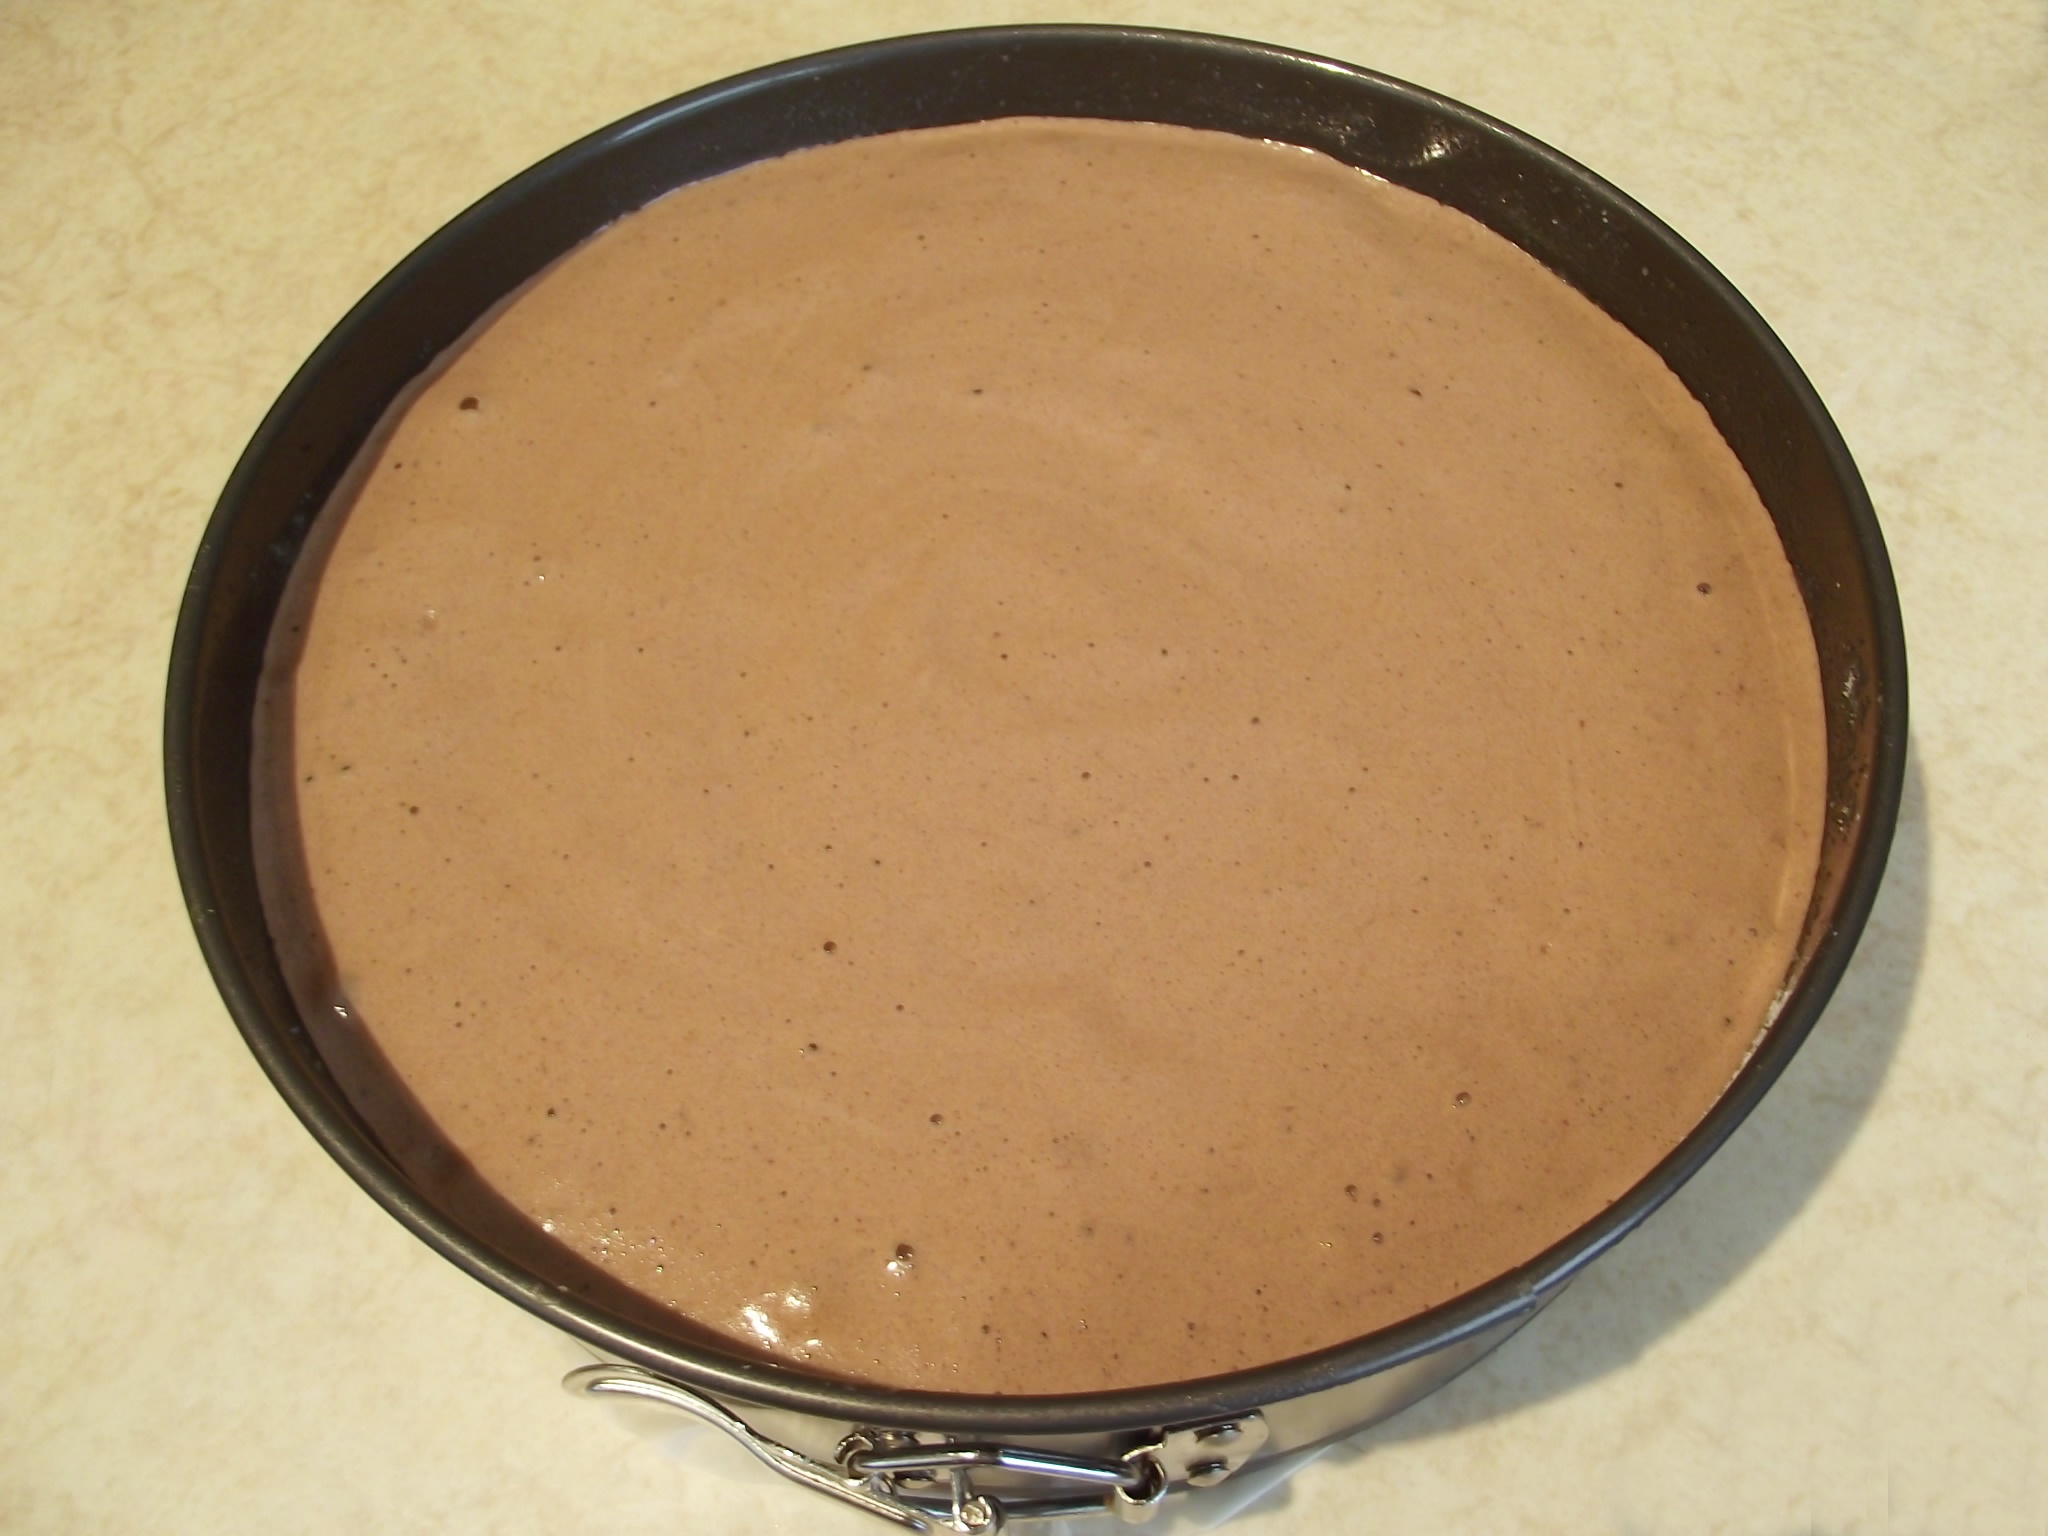 Desert tort cu crema de ciocolata alba si afine - 7 ani de bucataras